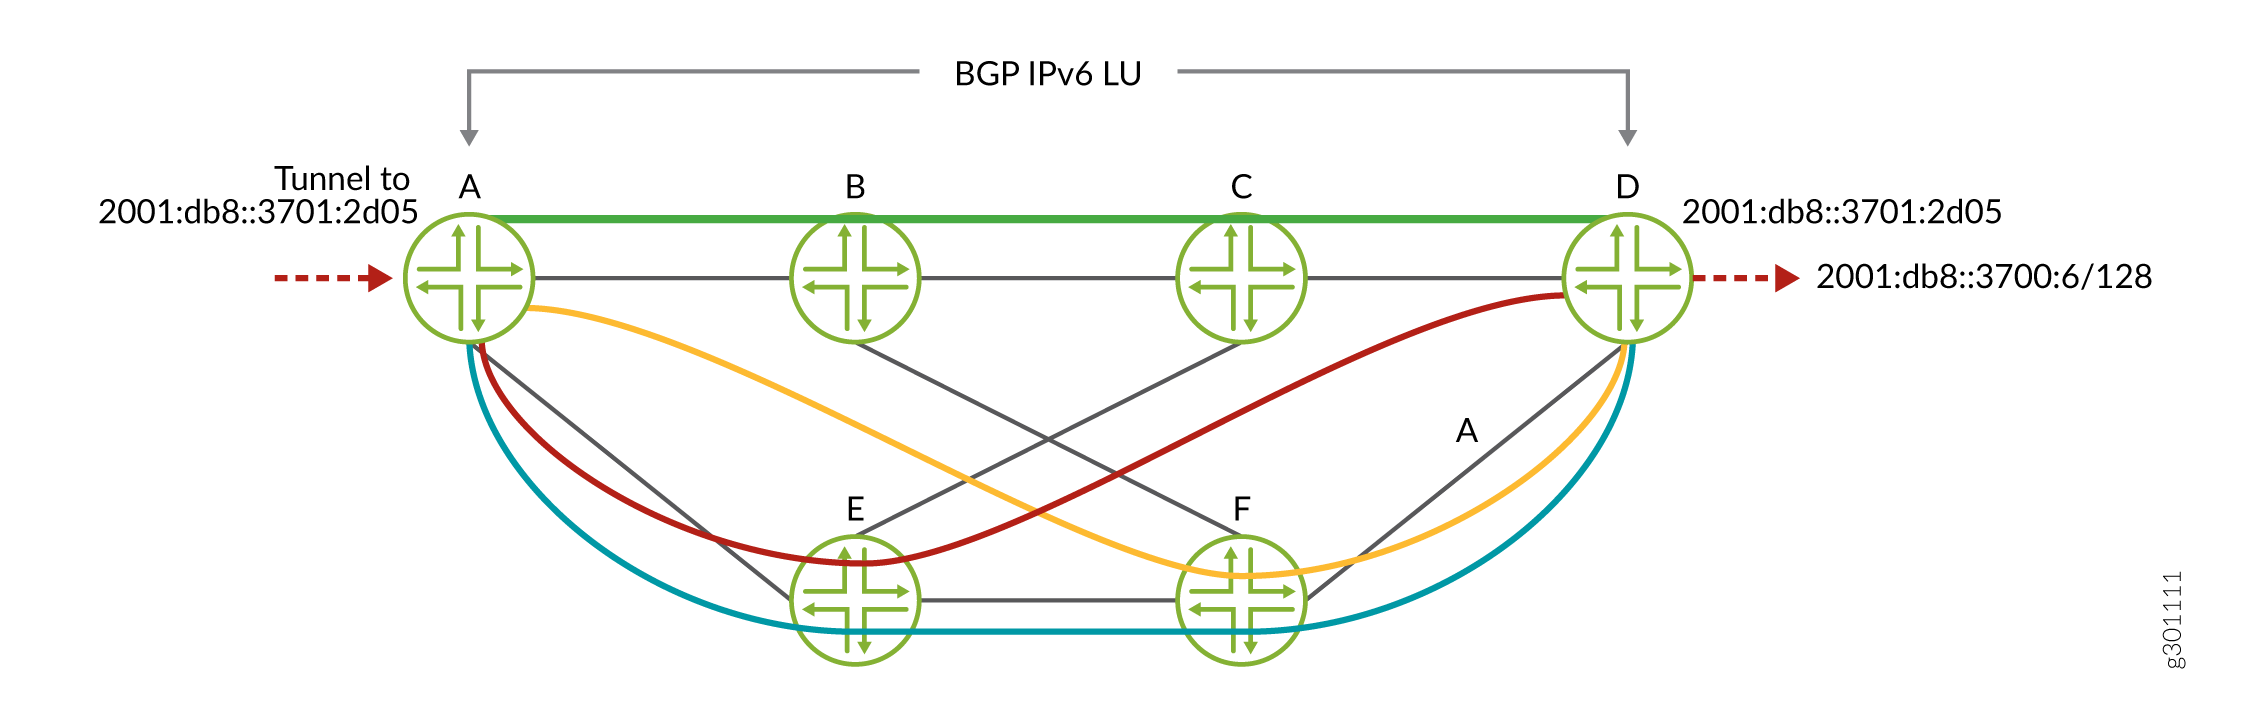 LU IPv6 BGP sobre SR-TE IPv6 coloreado